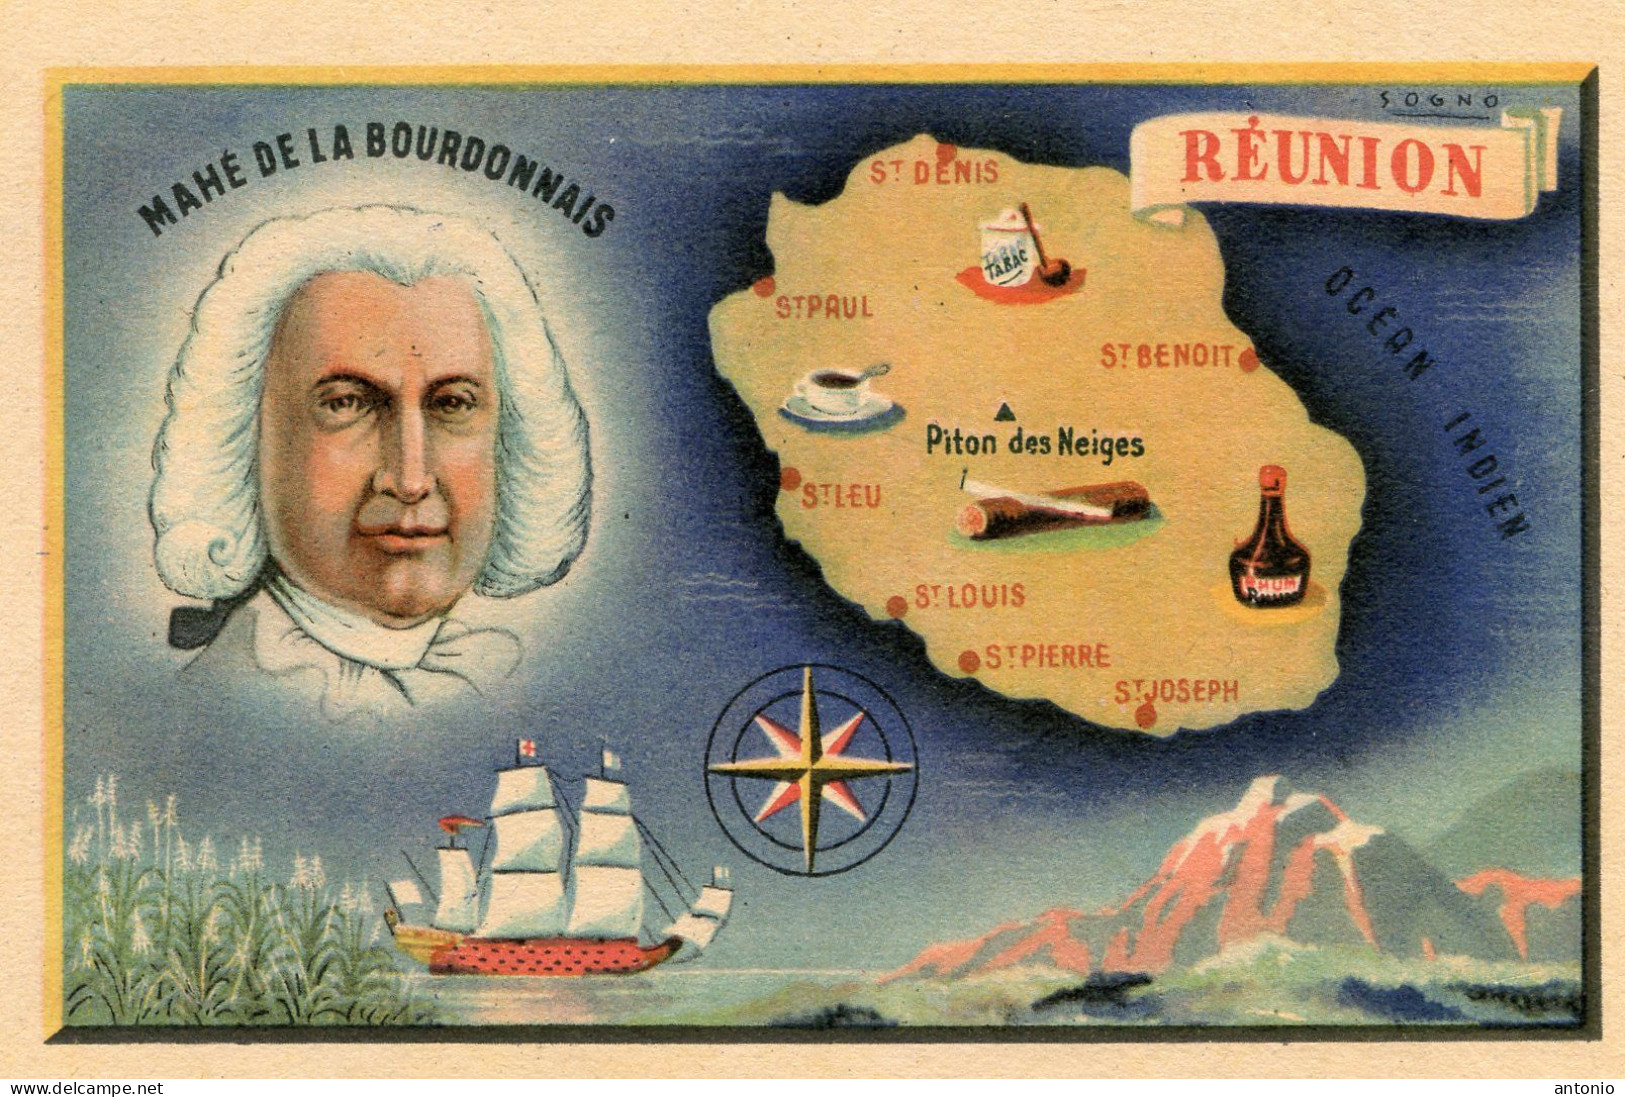 Réunion .Carte Géographique. Mahé De La Bourdonnais - Reunion